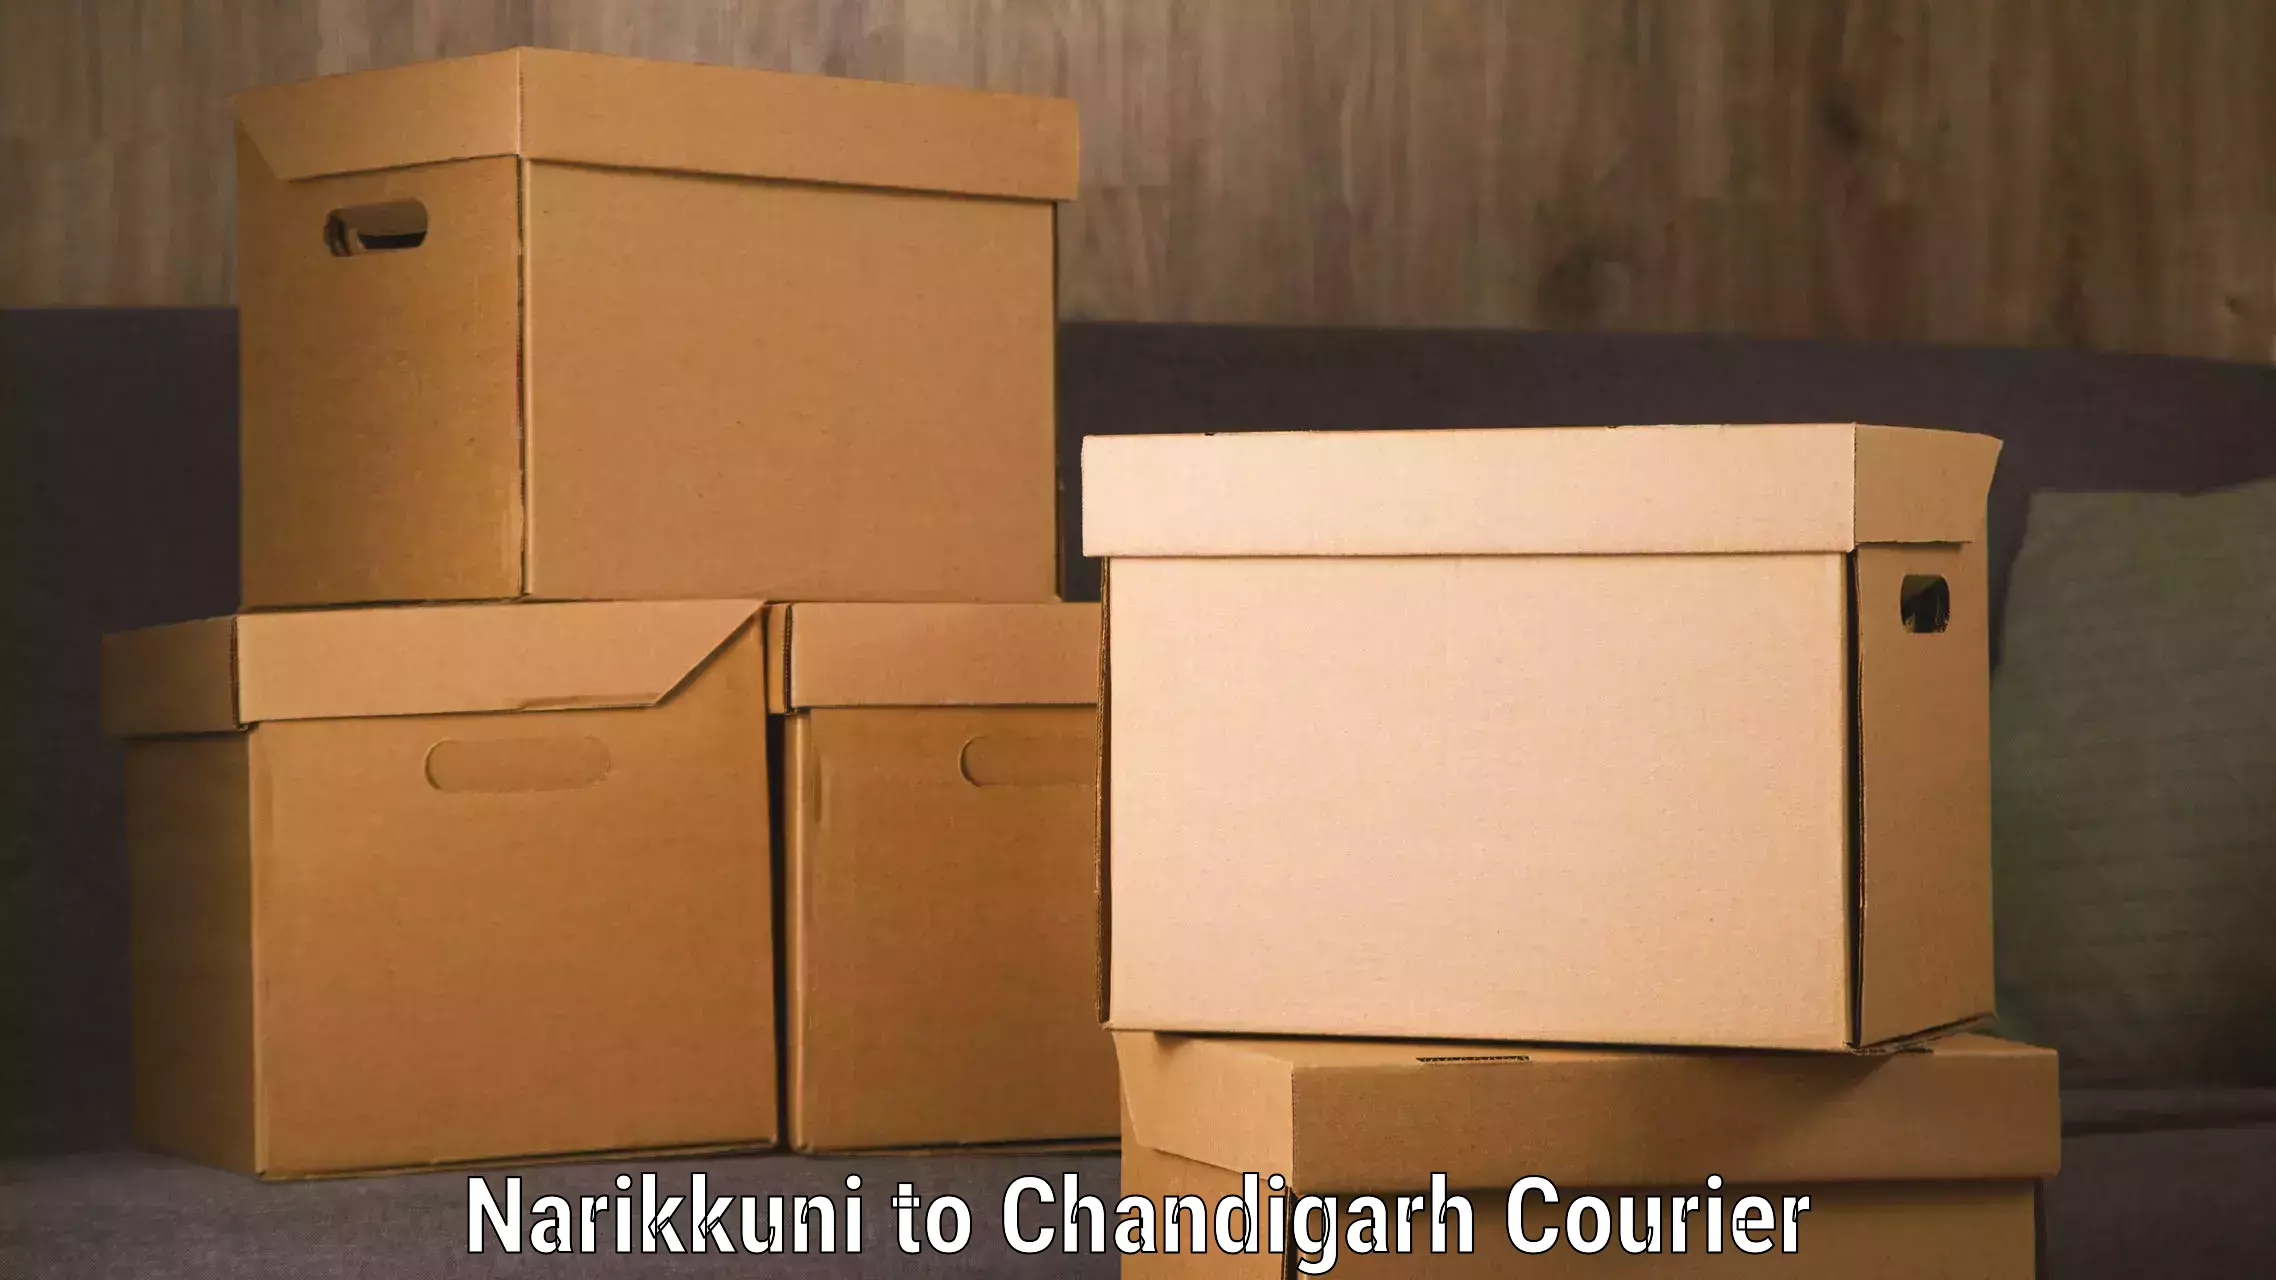 Efficient logistics management in Narikkuni to Chandigarh